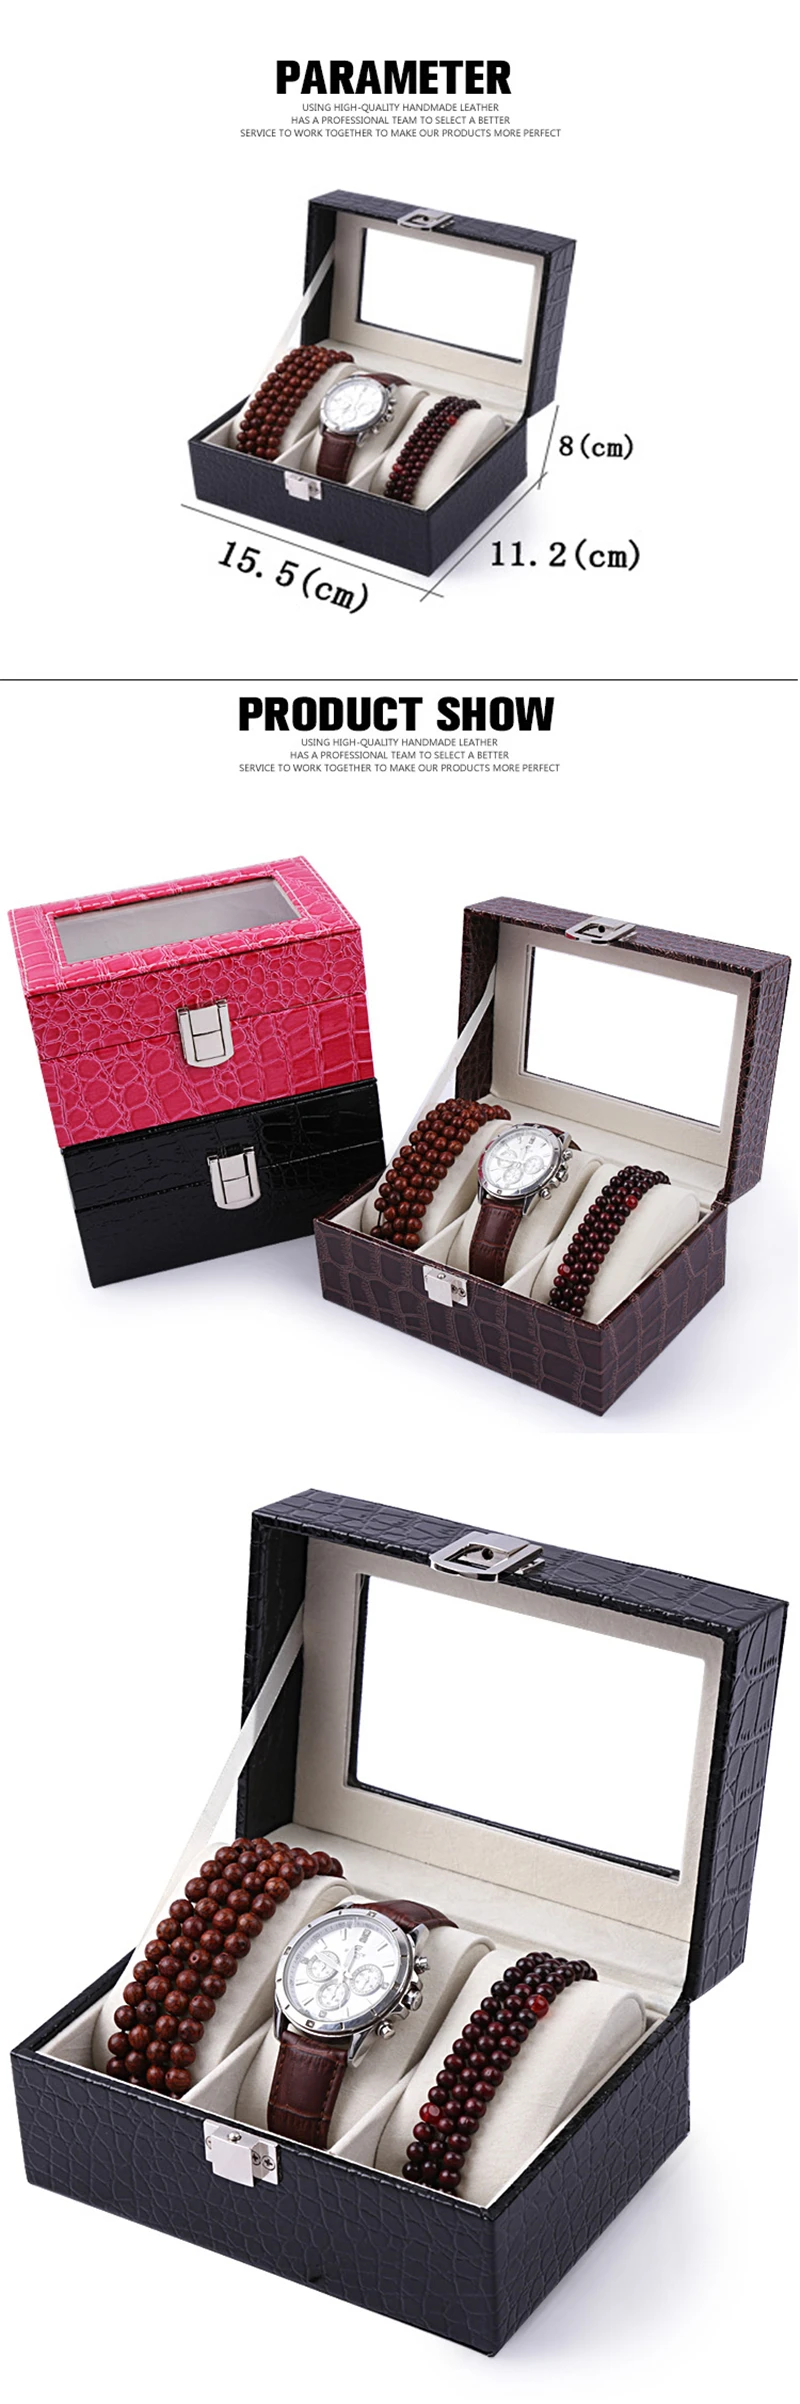 3 слота Aivtalk коробка для часов Высокое качество полоса кожаный чехол для дисплея Коробка для хранения ювелирных изделий Органайзер для хранения наручных часов коробка держатель